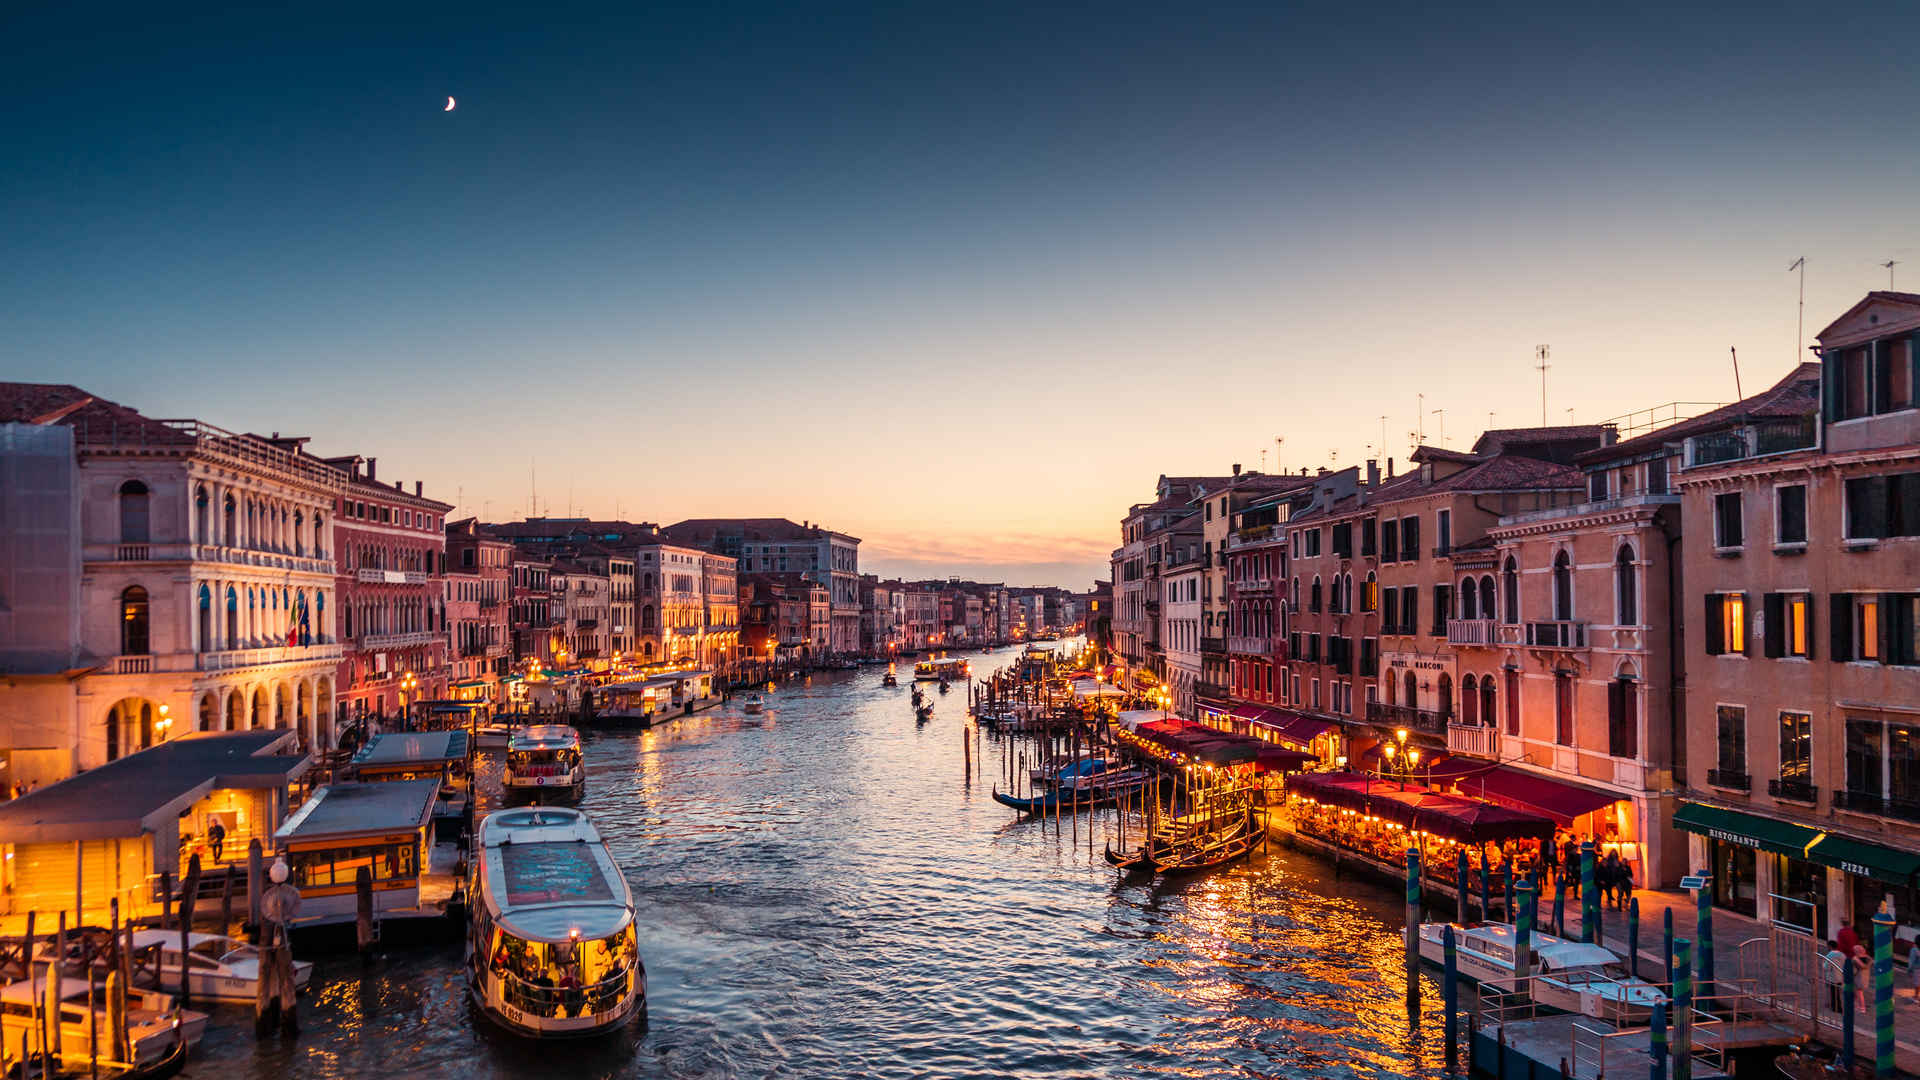 意大利威尼斯大运河夜间风景4k图片